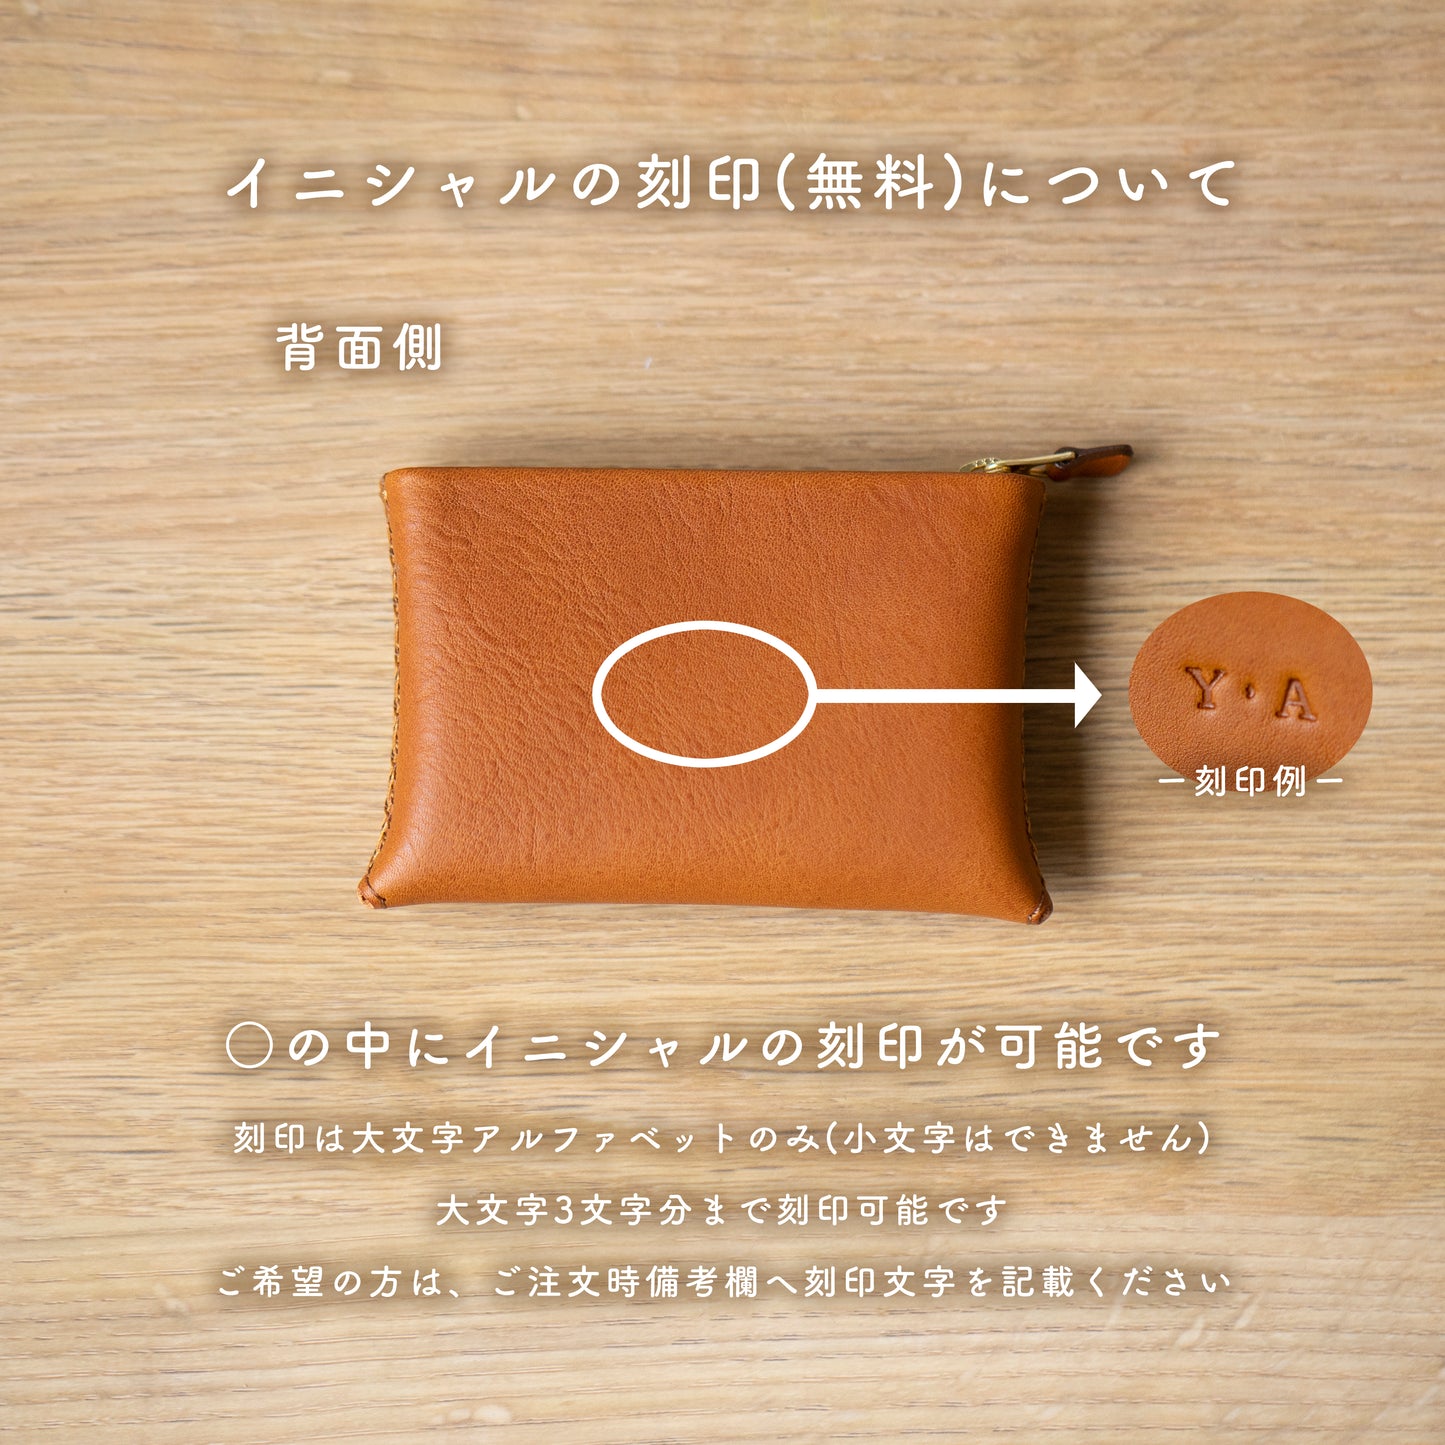 ジグザグ手縫いのミニ財布 (グリージオグレー)